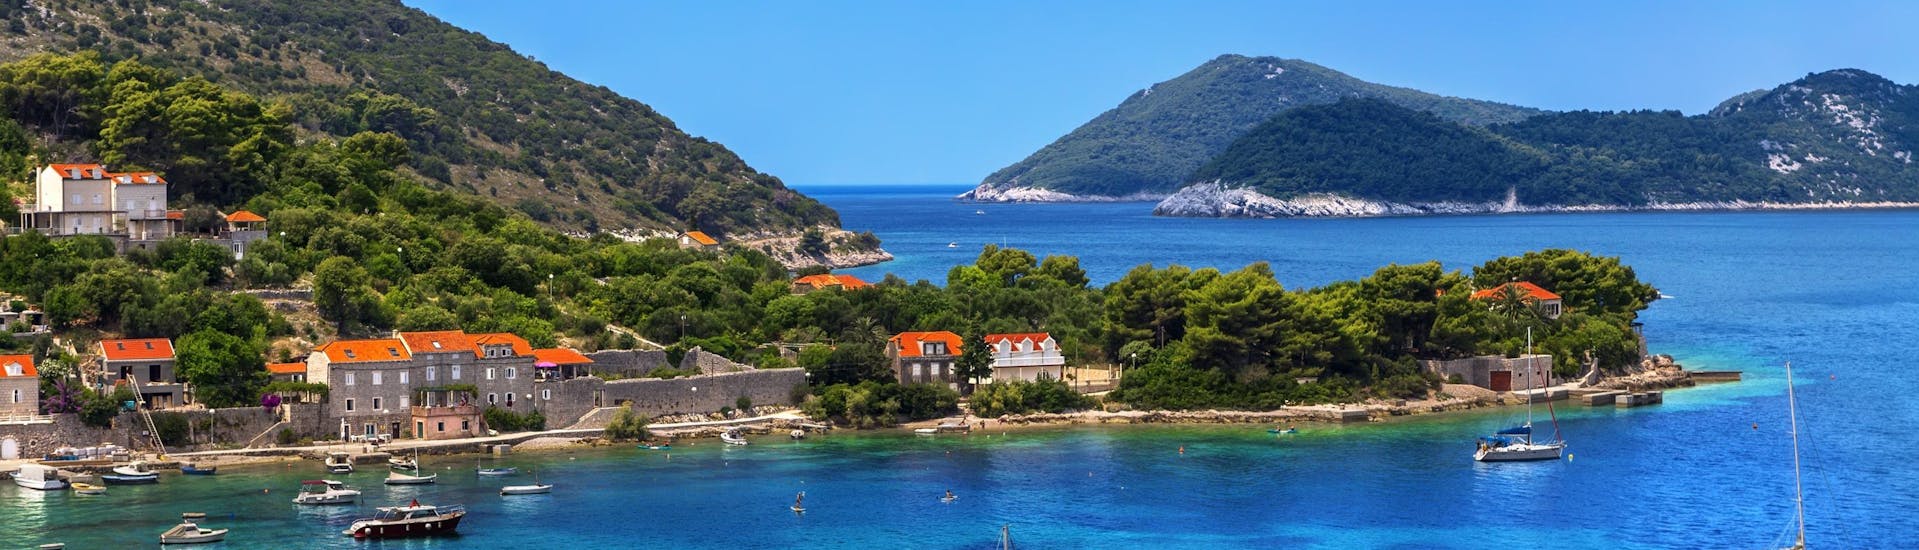 Photo de l'île de Kolocep, qui fait partie des îles Elaphiti près de la côte de Dubrovnik, une destination populaire pour les excursions en bateau.